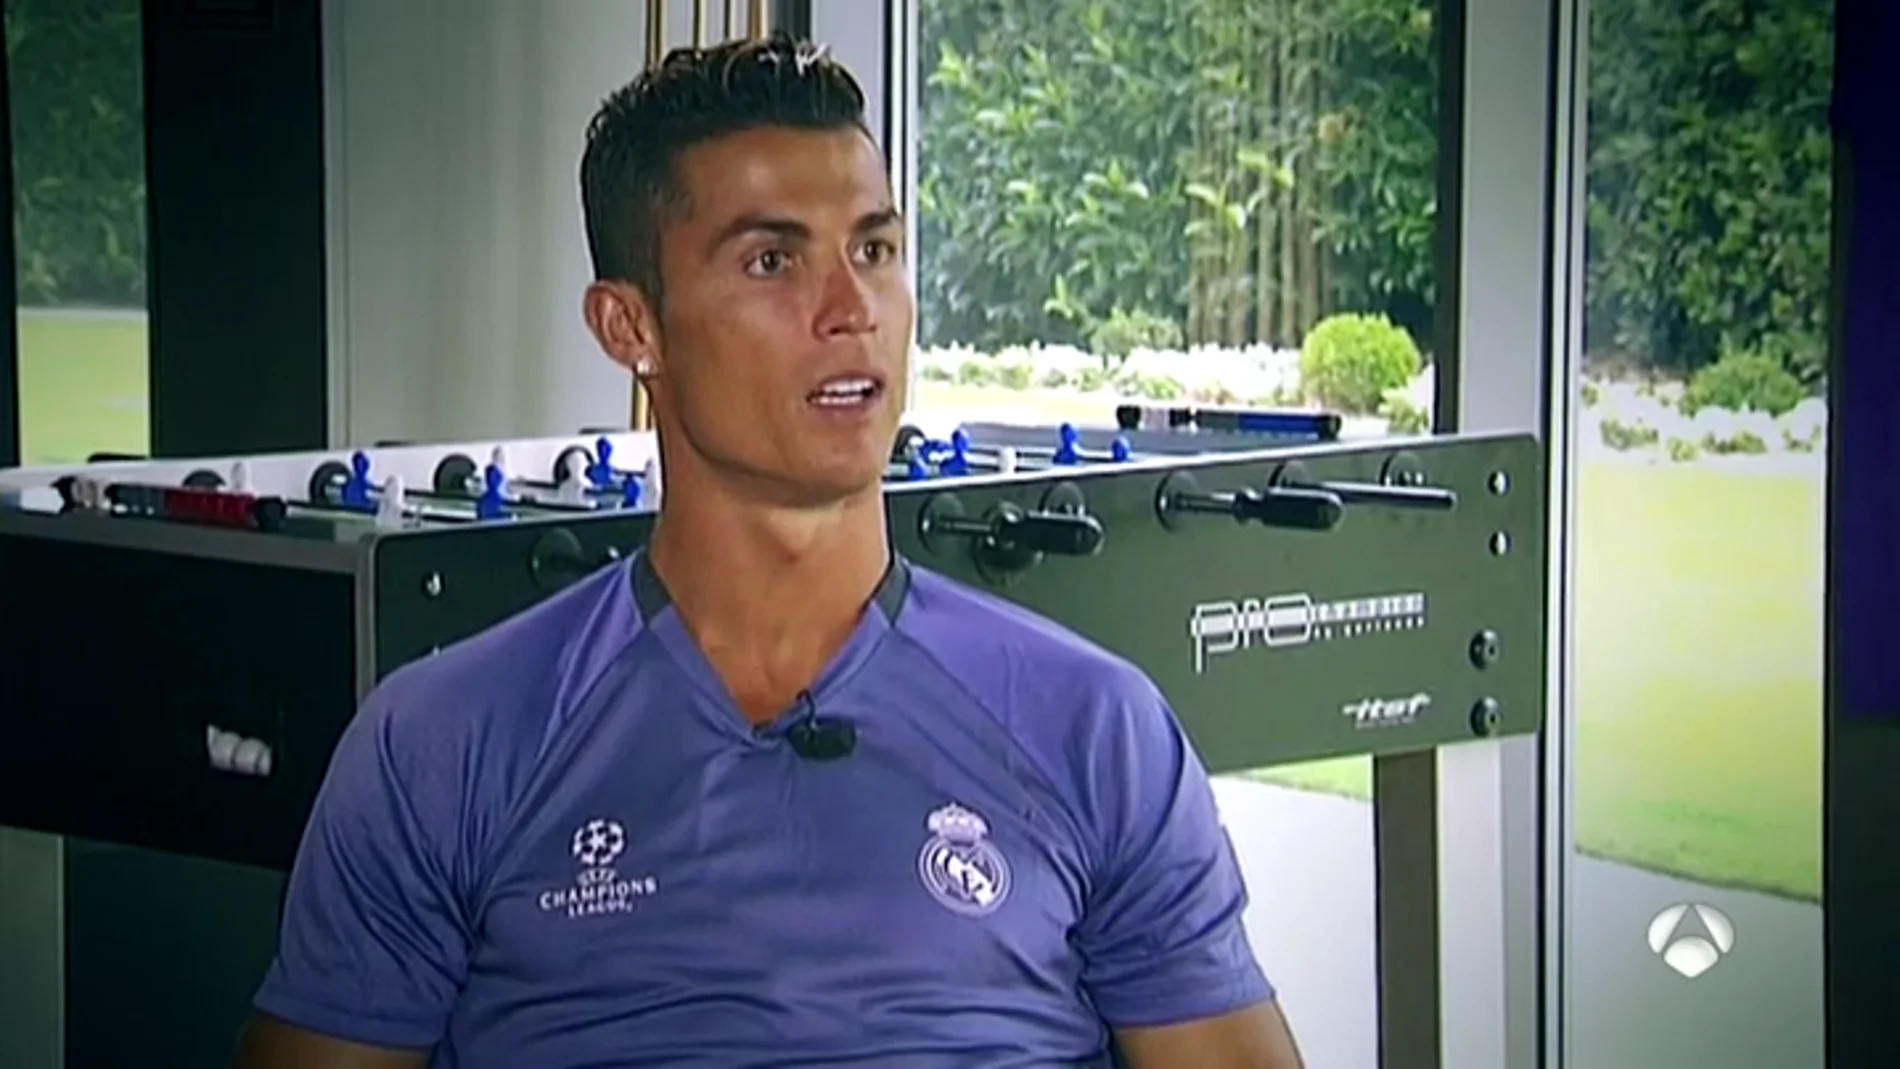 Frame 48.52421 de: Cristiano Ronaldo: "¿Hacienda? Yo hago las cosas bien y duermo tranquilo"